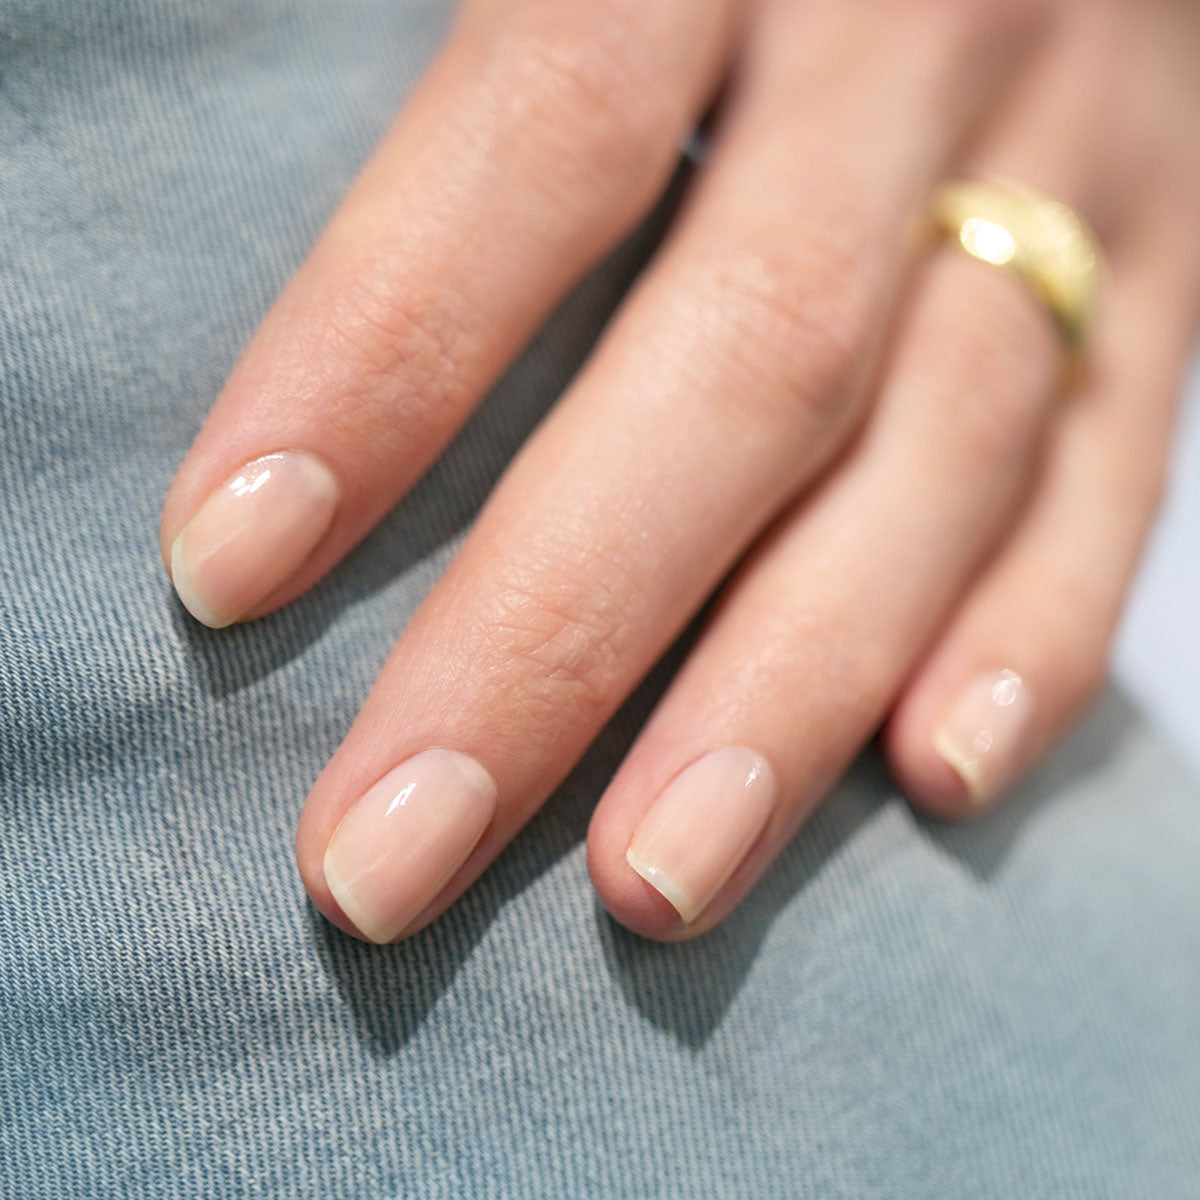 Pinky beige nails | Nail polish, Pink nail polish, Trendy nails